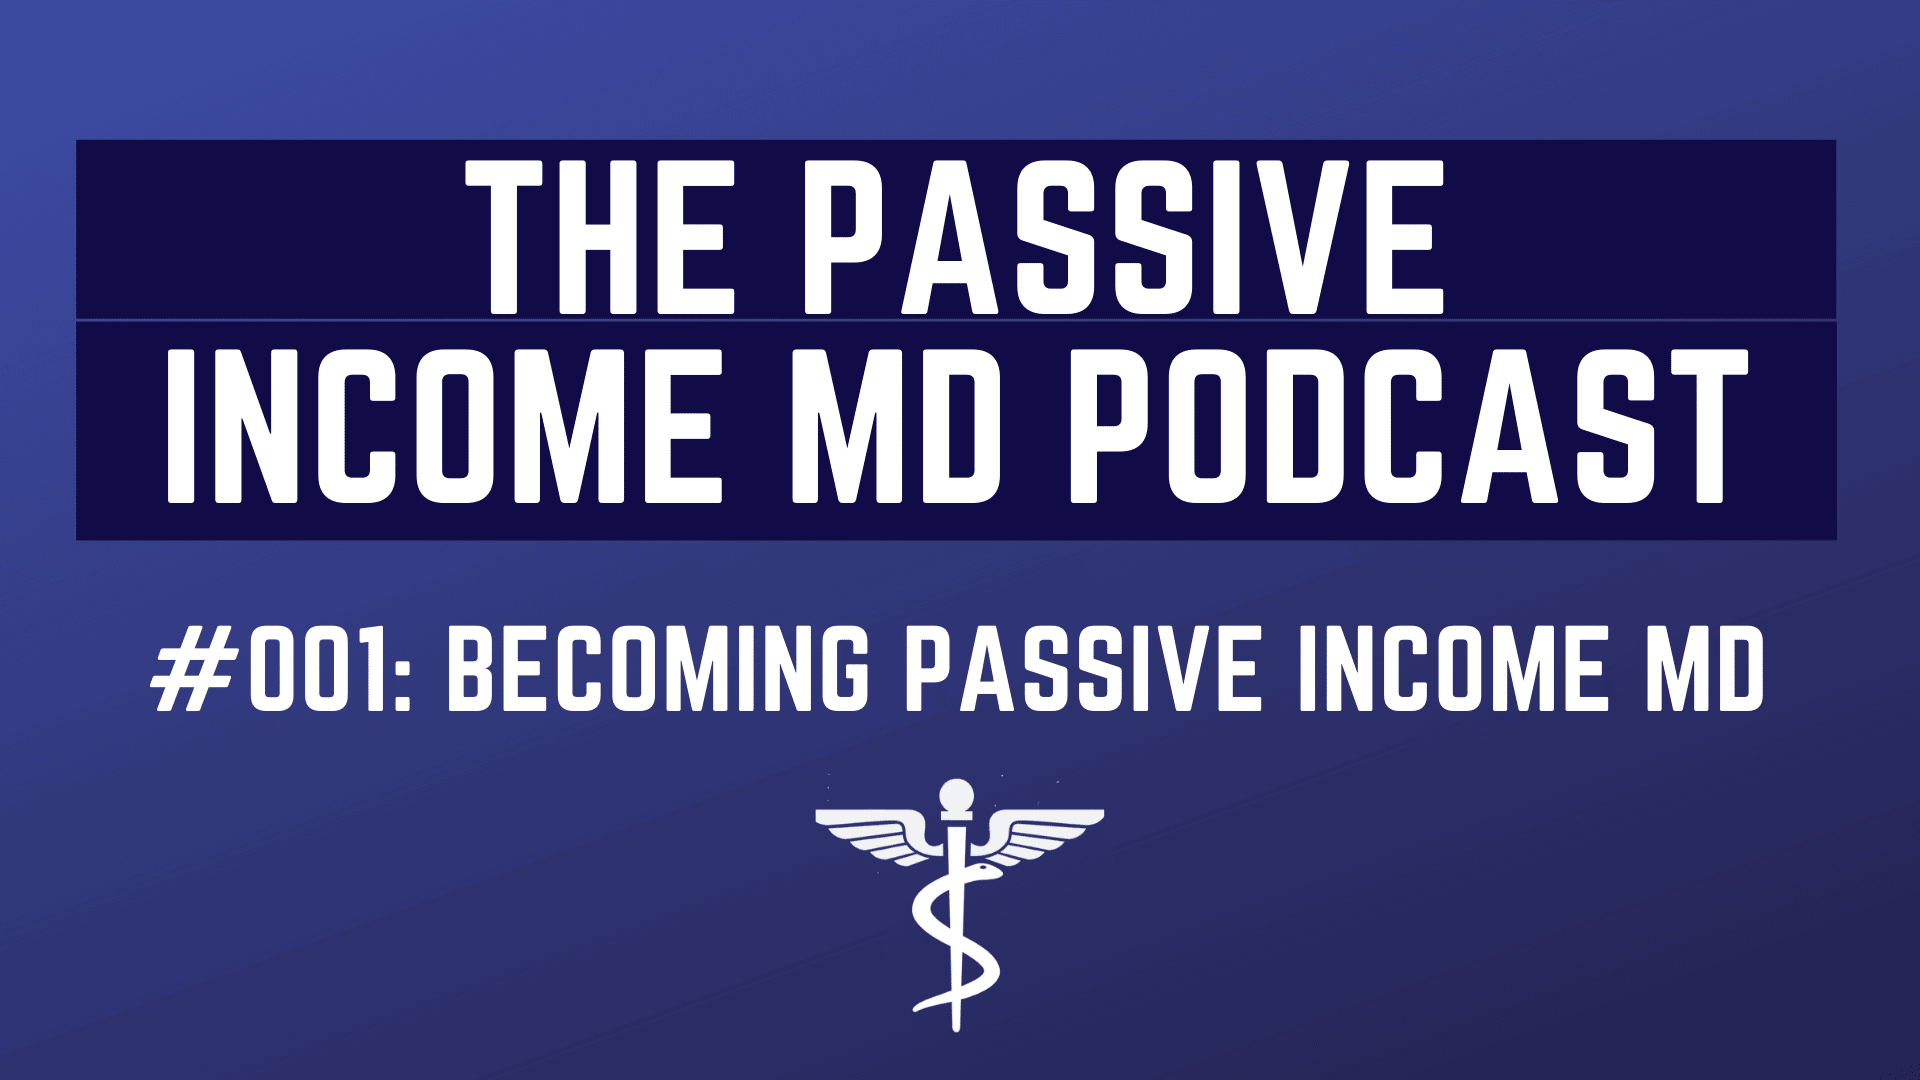 The Passive Income MD Podcast